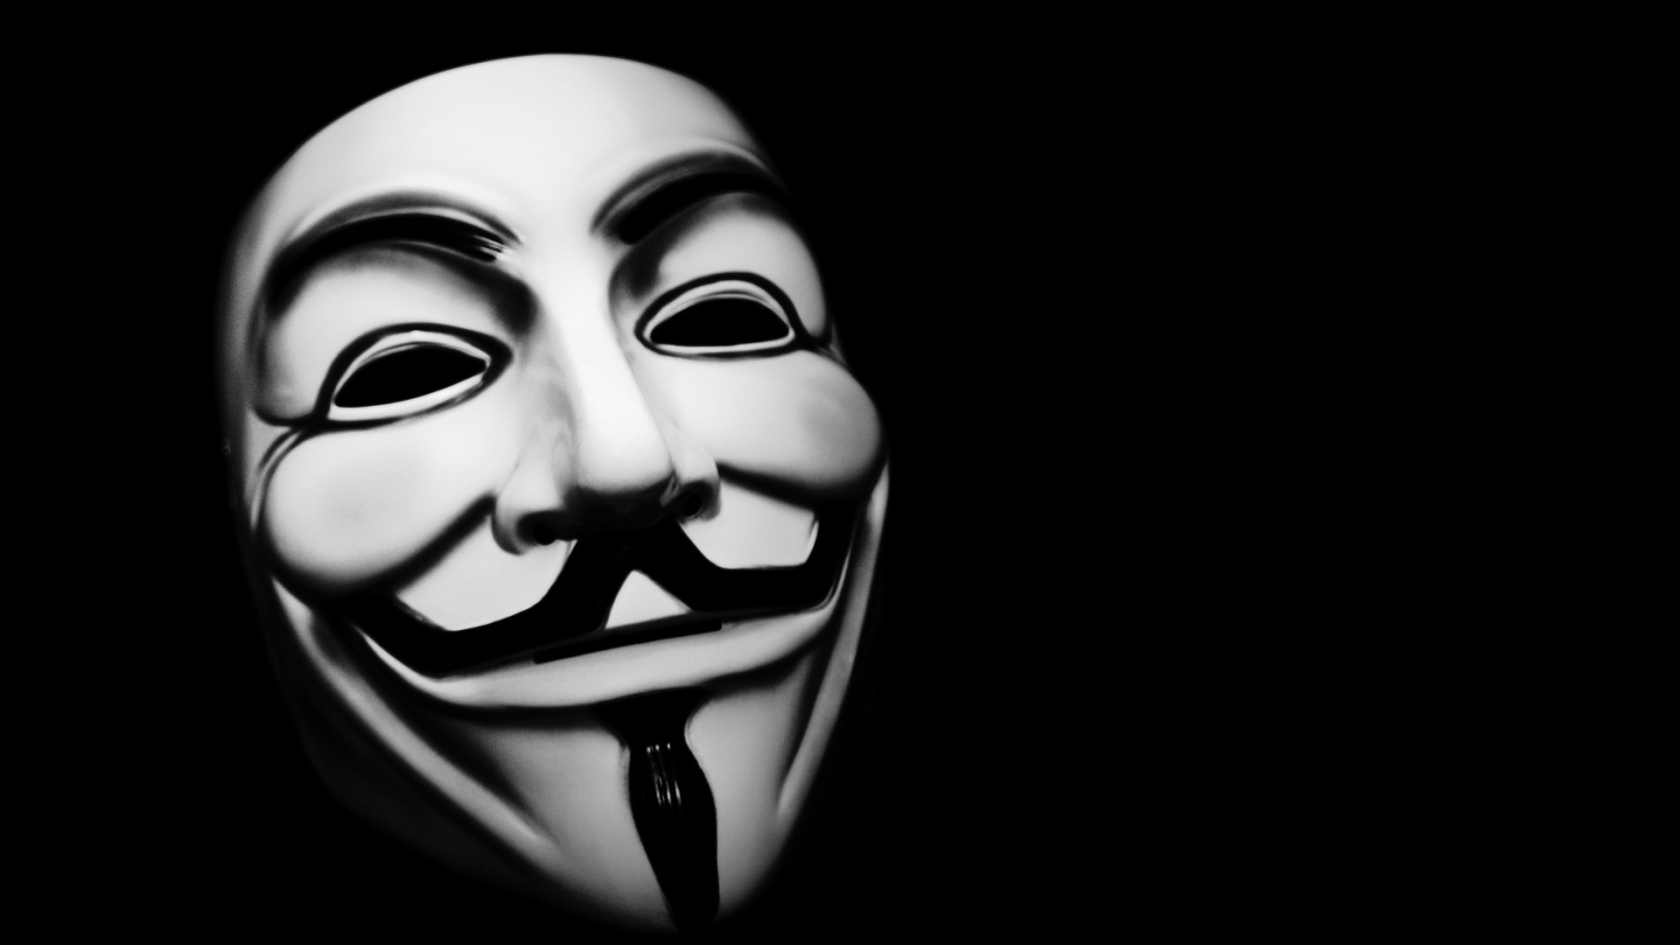 Vendetta Mask for 1680 x 945 HDTV resolution